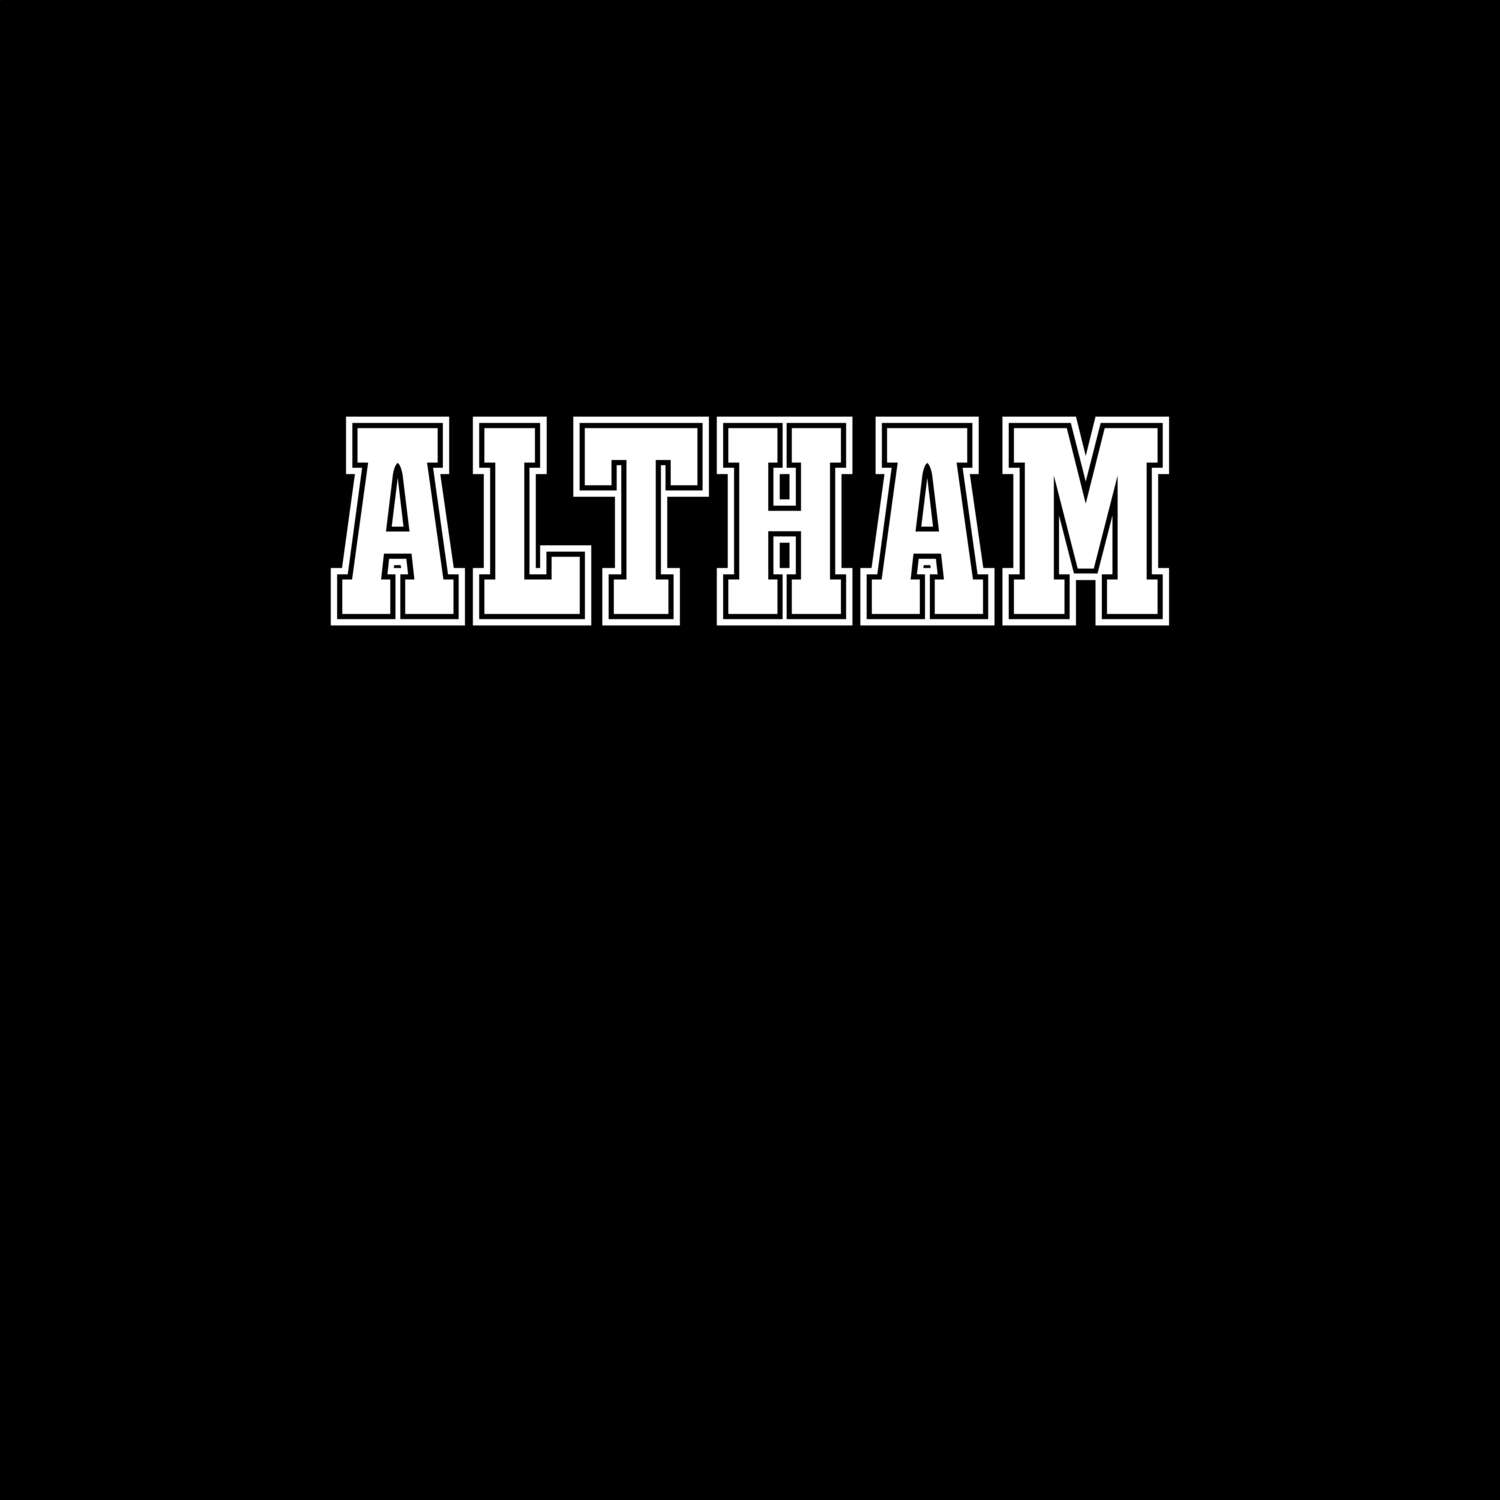 Altham T-Shirt »Classic«